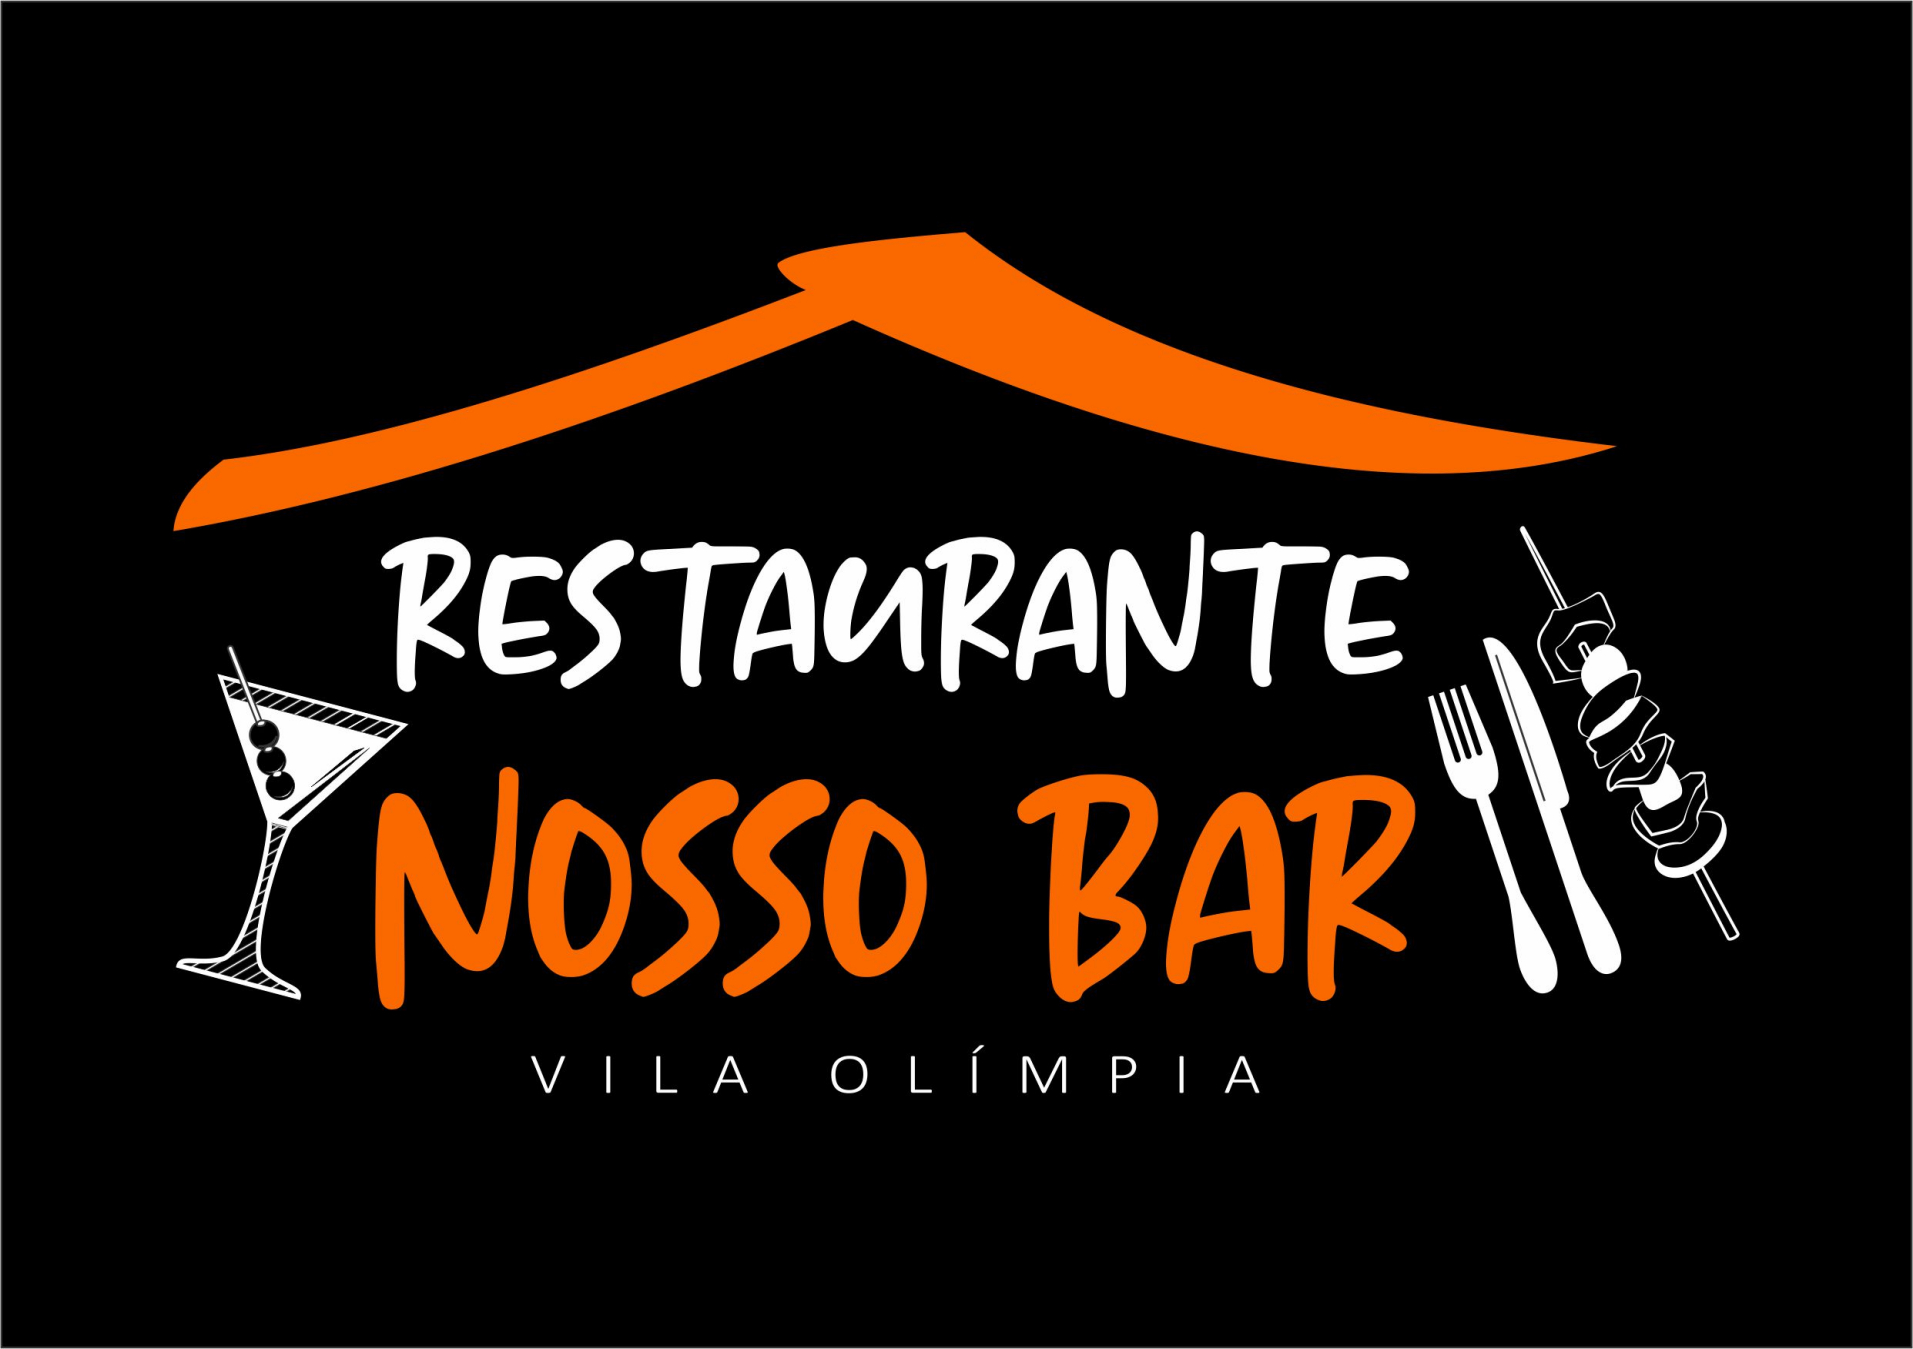 Restaurante Nosso Bar - Vila Olímpia